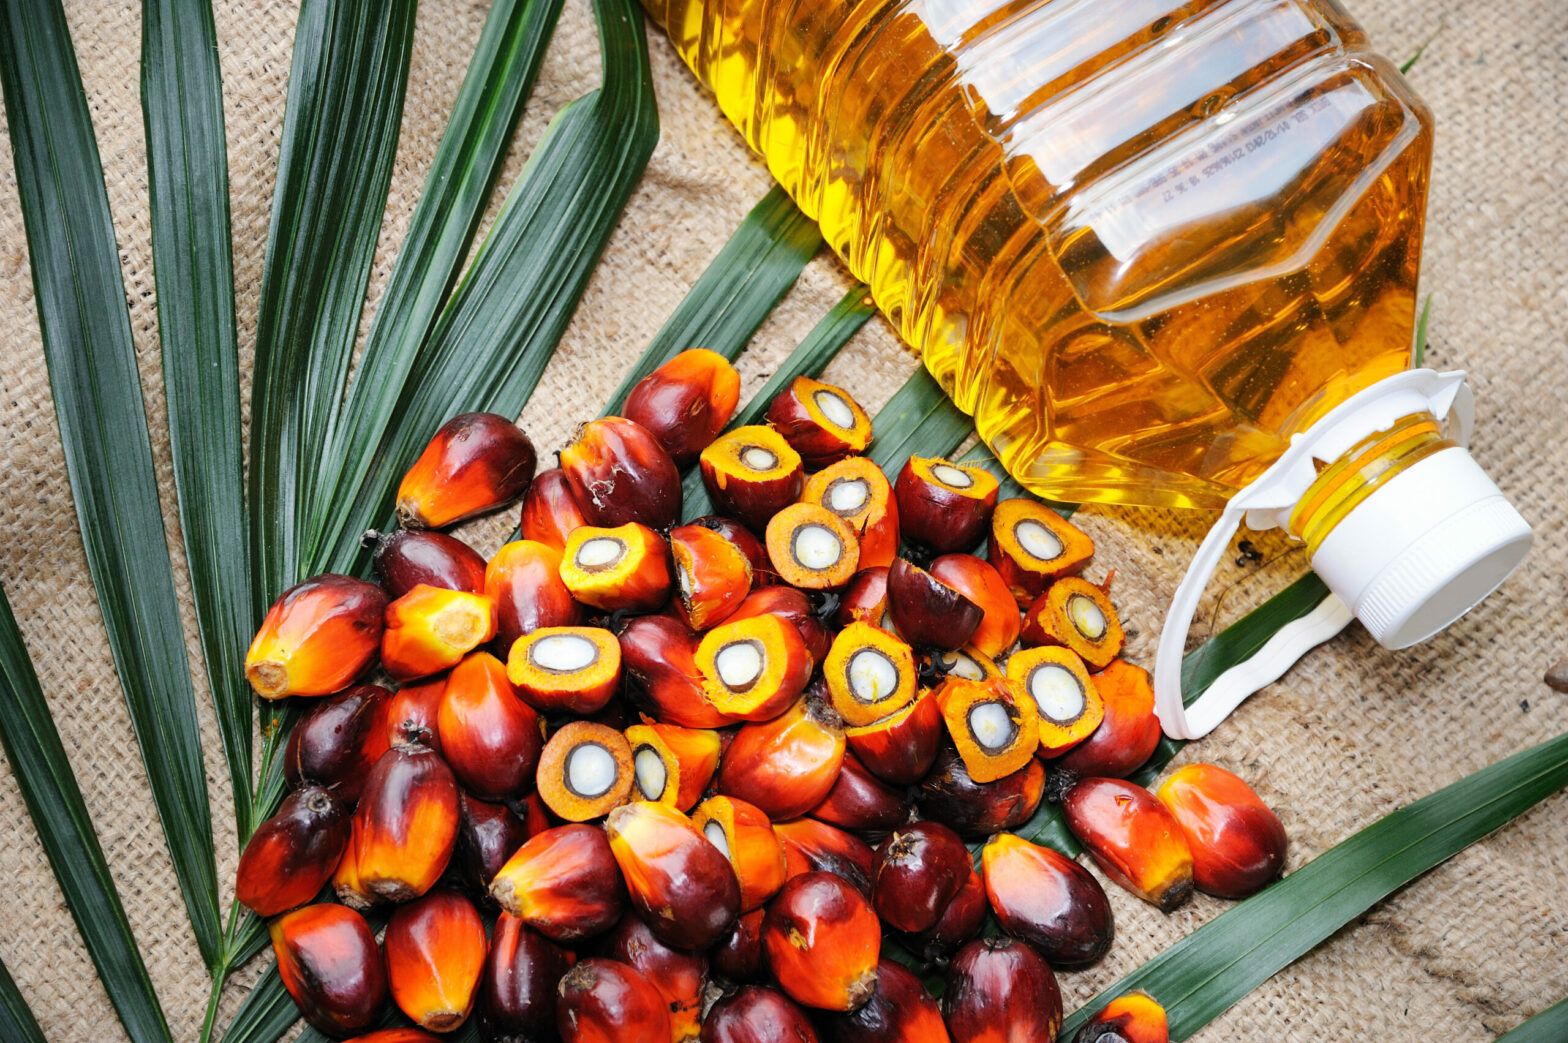 Palm oil investing through an ESG lens